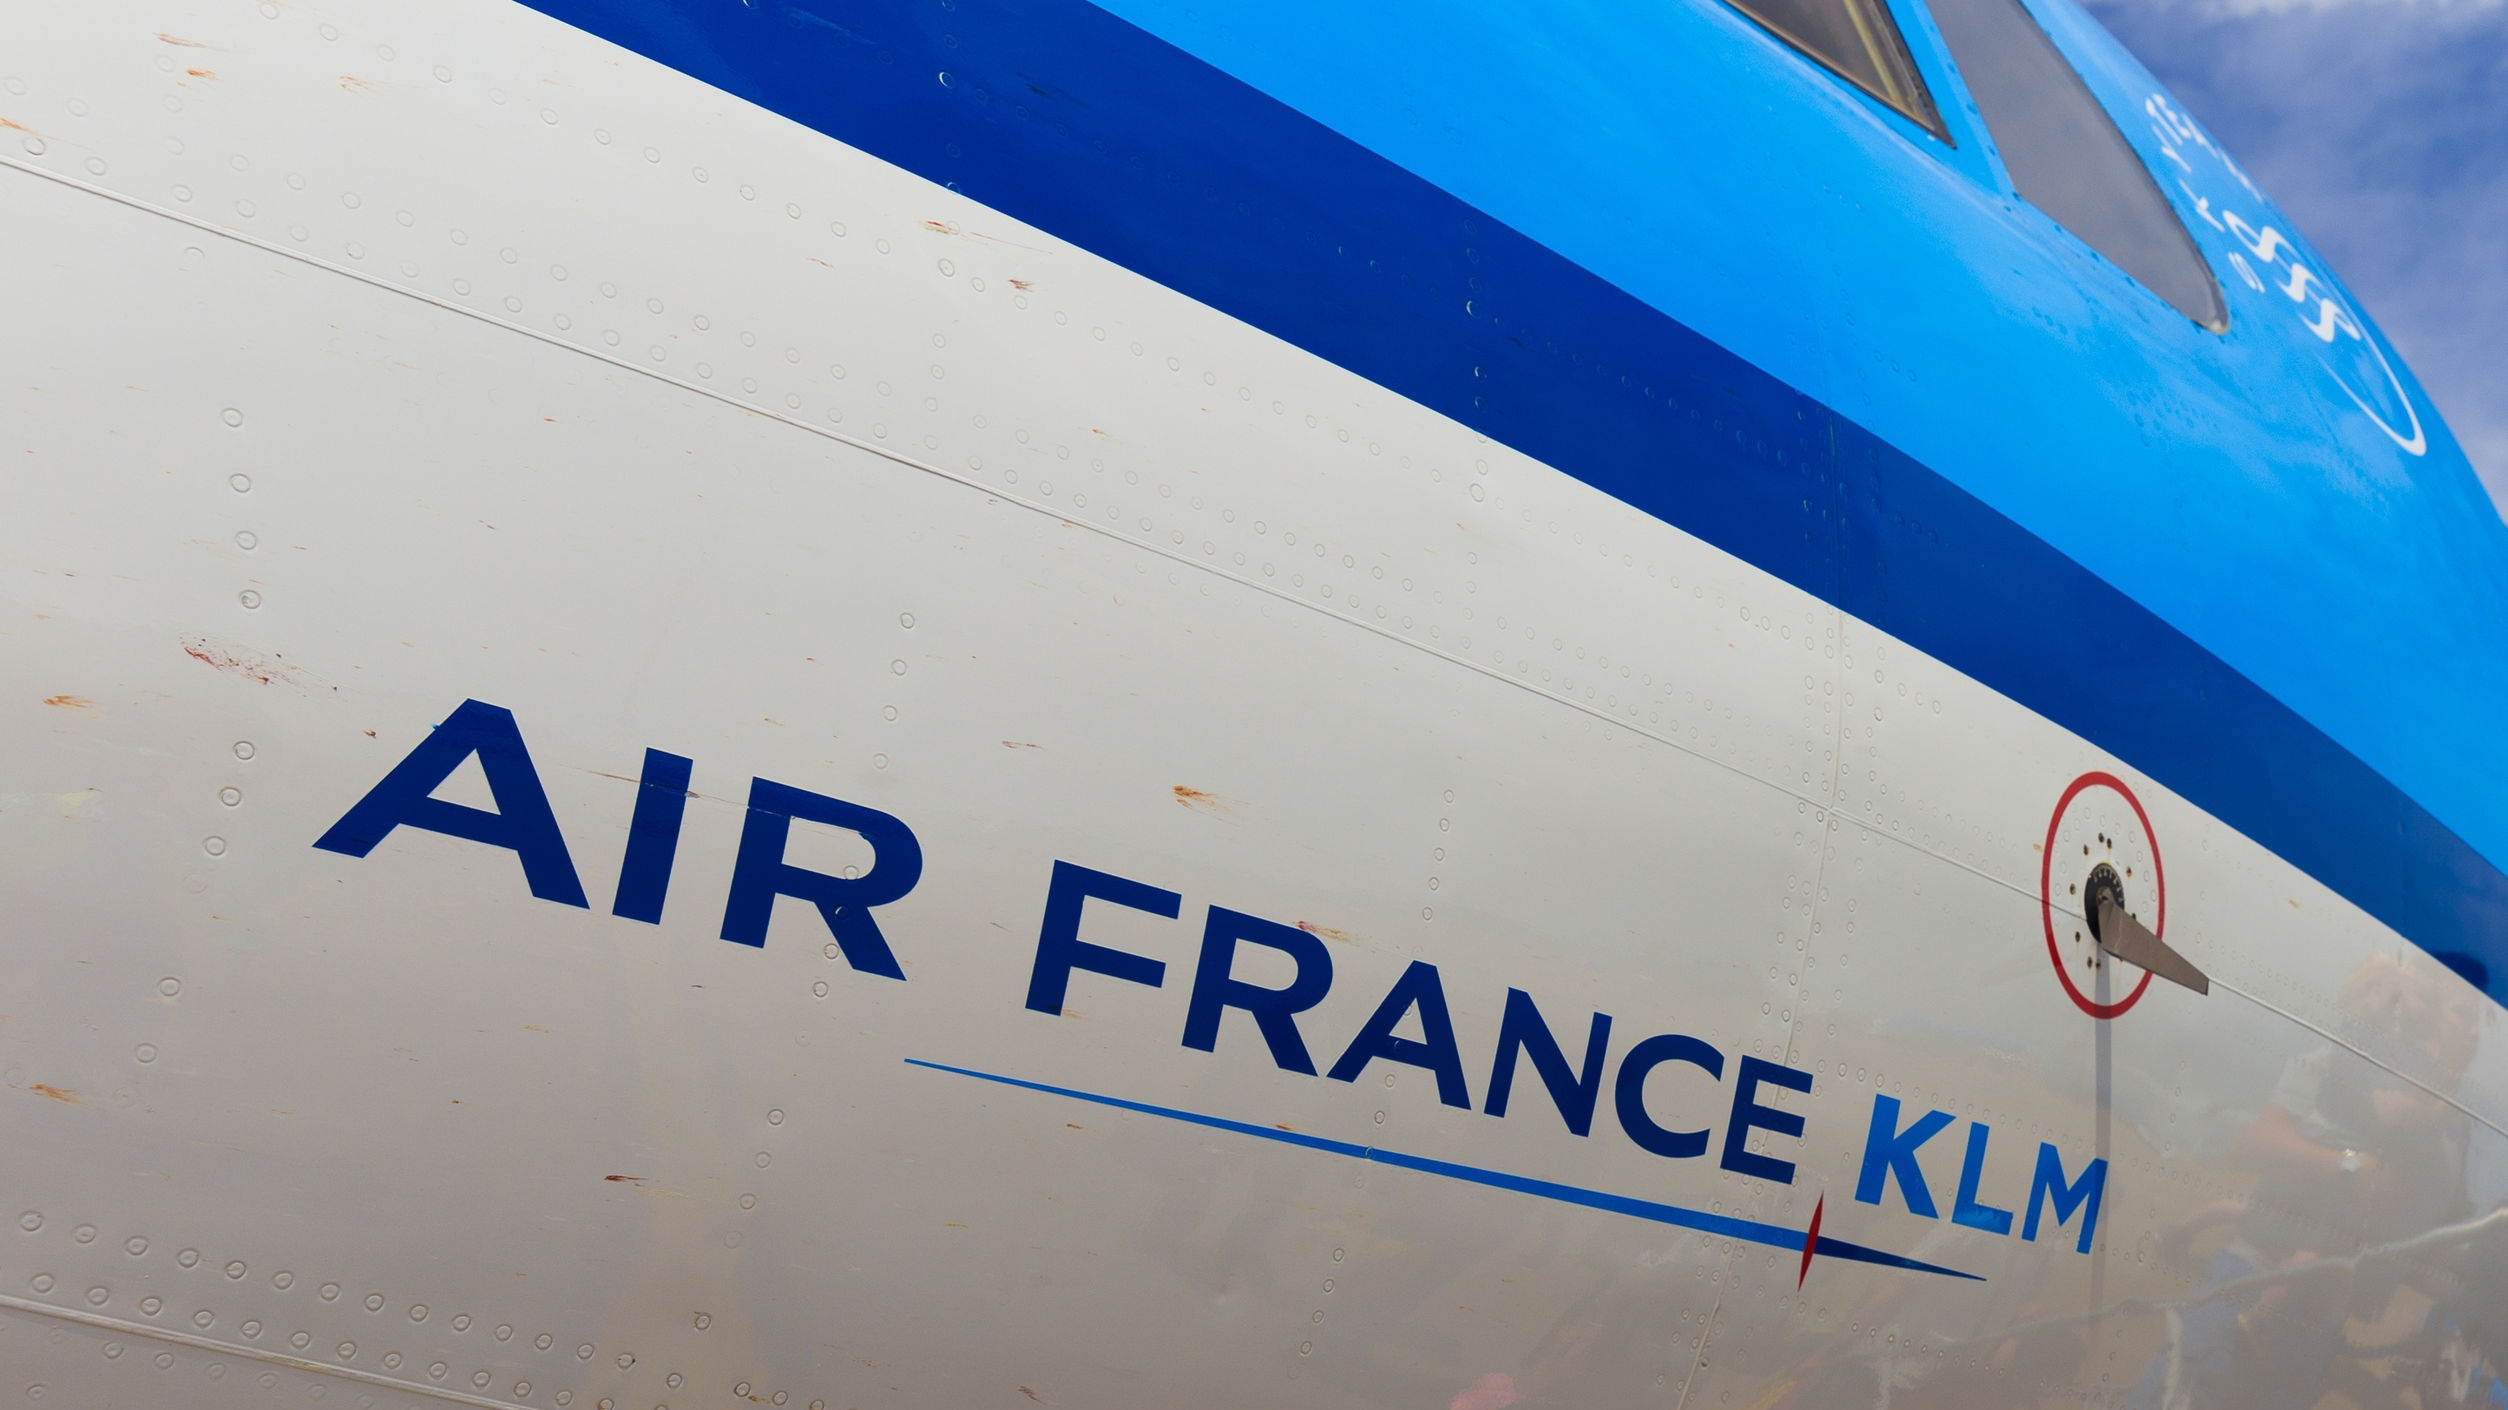 KLM-tickets mogelijk duurder op andere websites